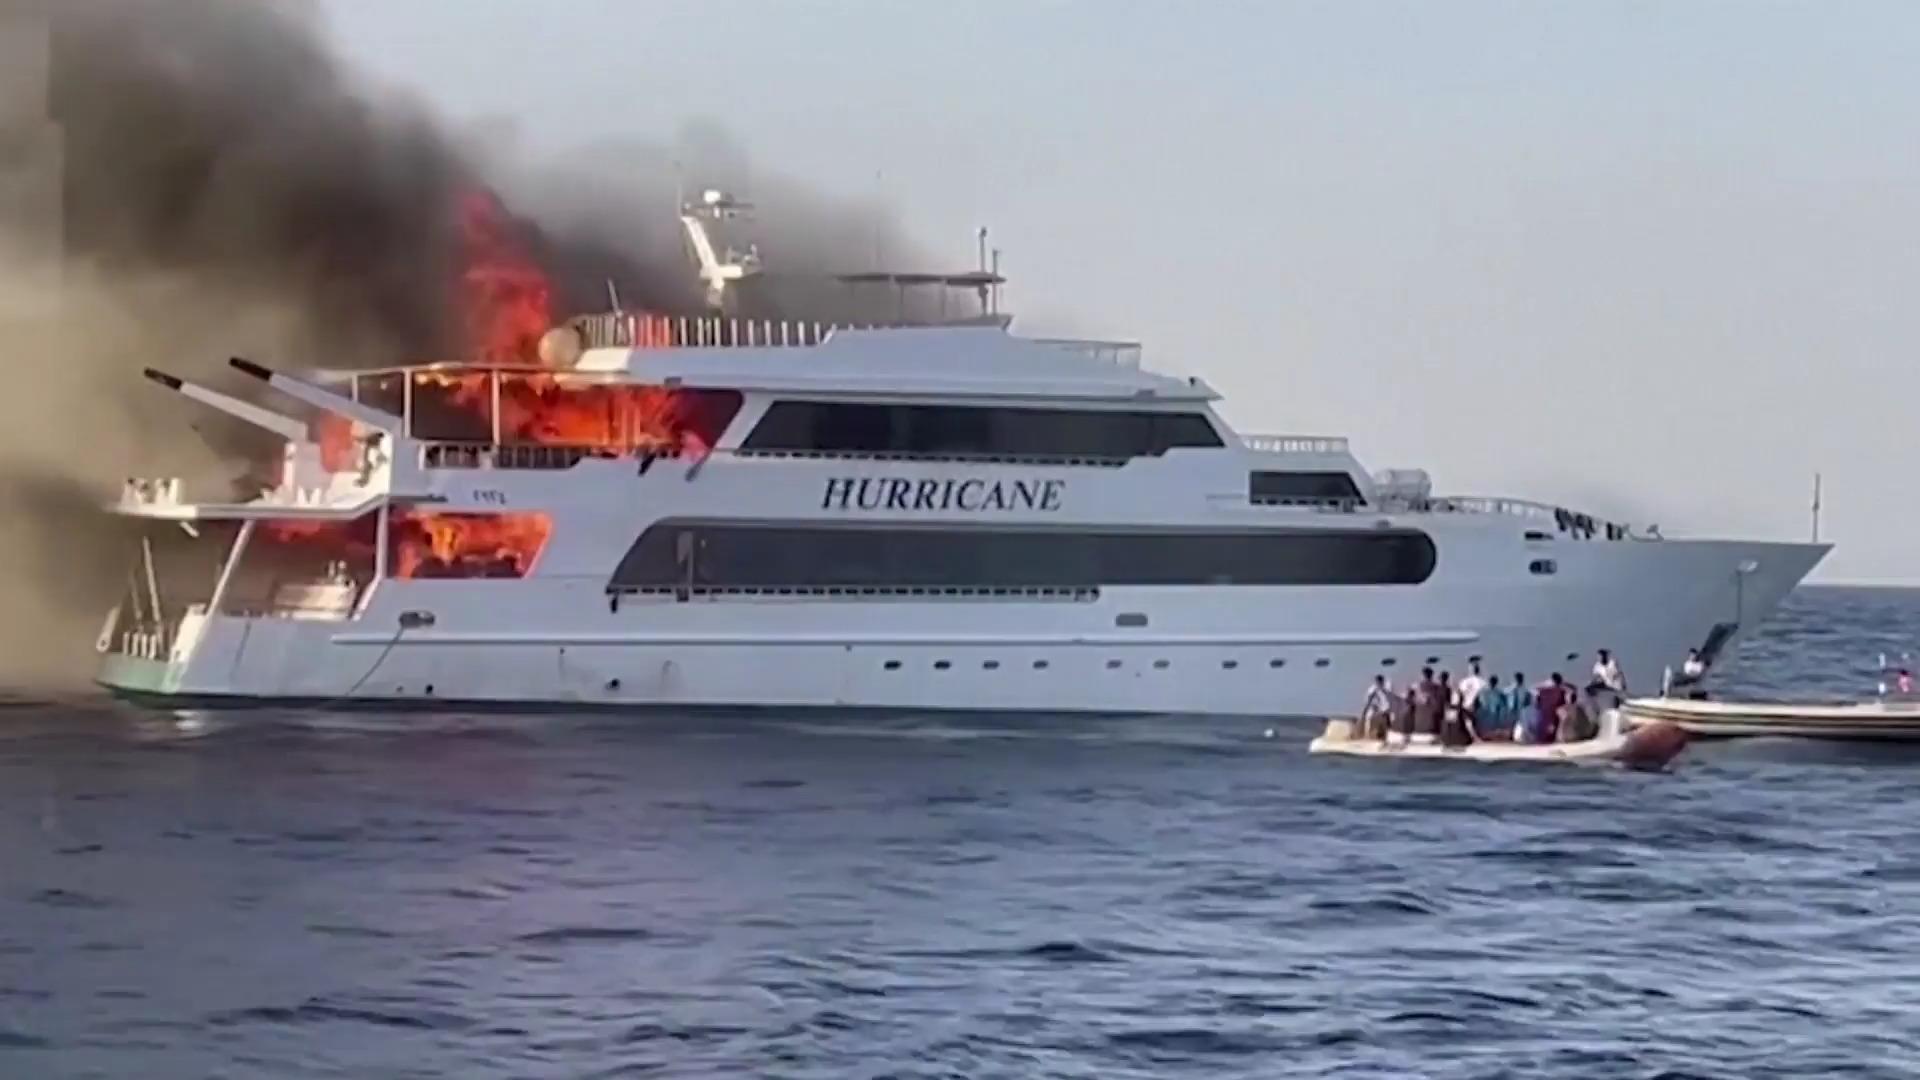 Boot geht bei Luxus-Tauchtour in Flammen auf Drei Touristen vermisst